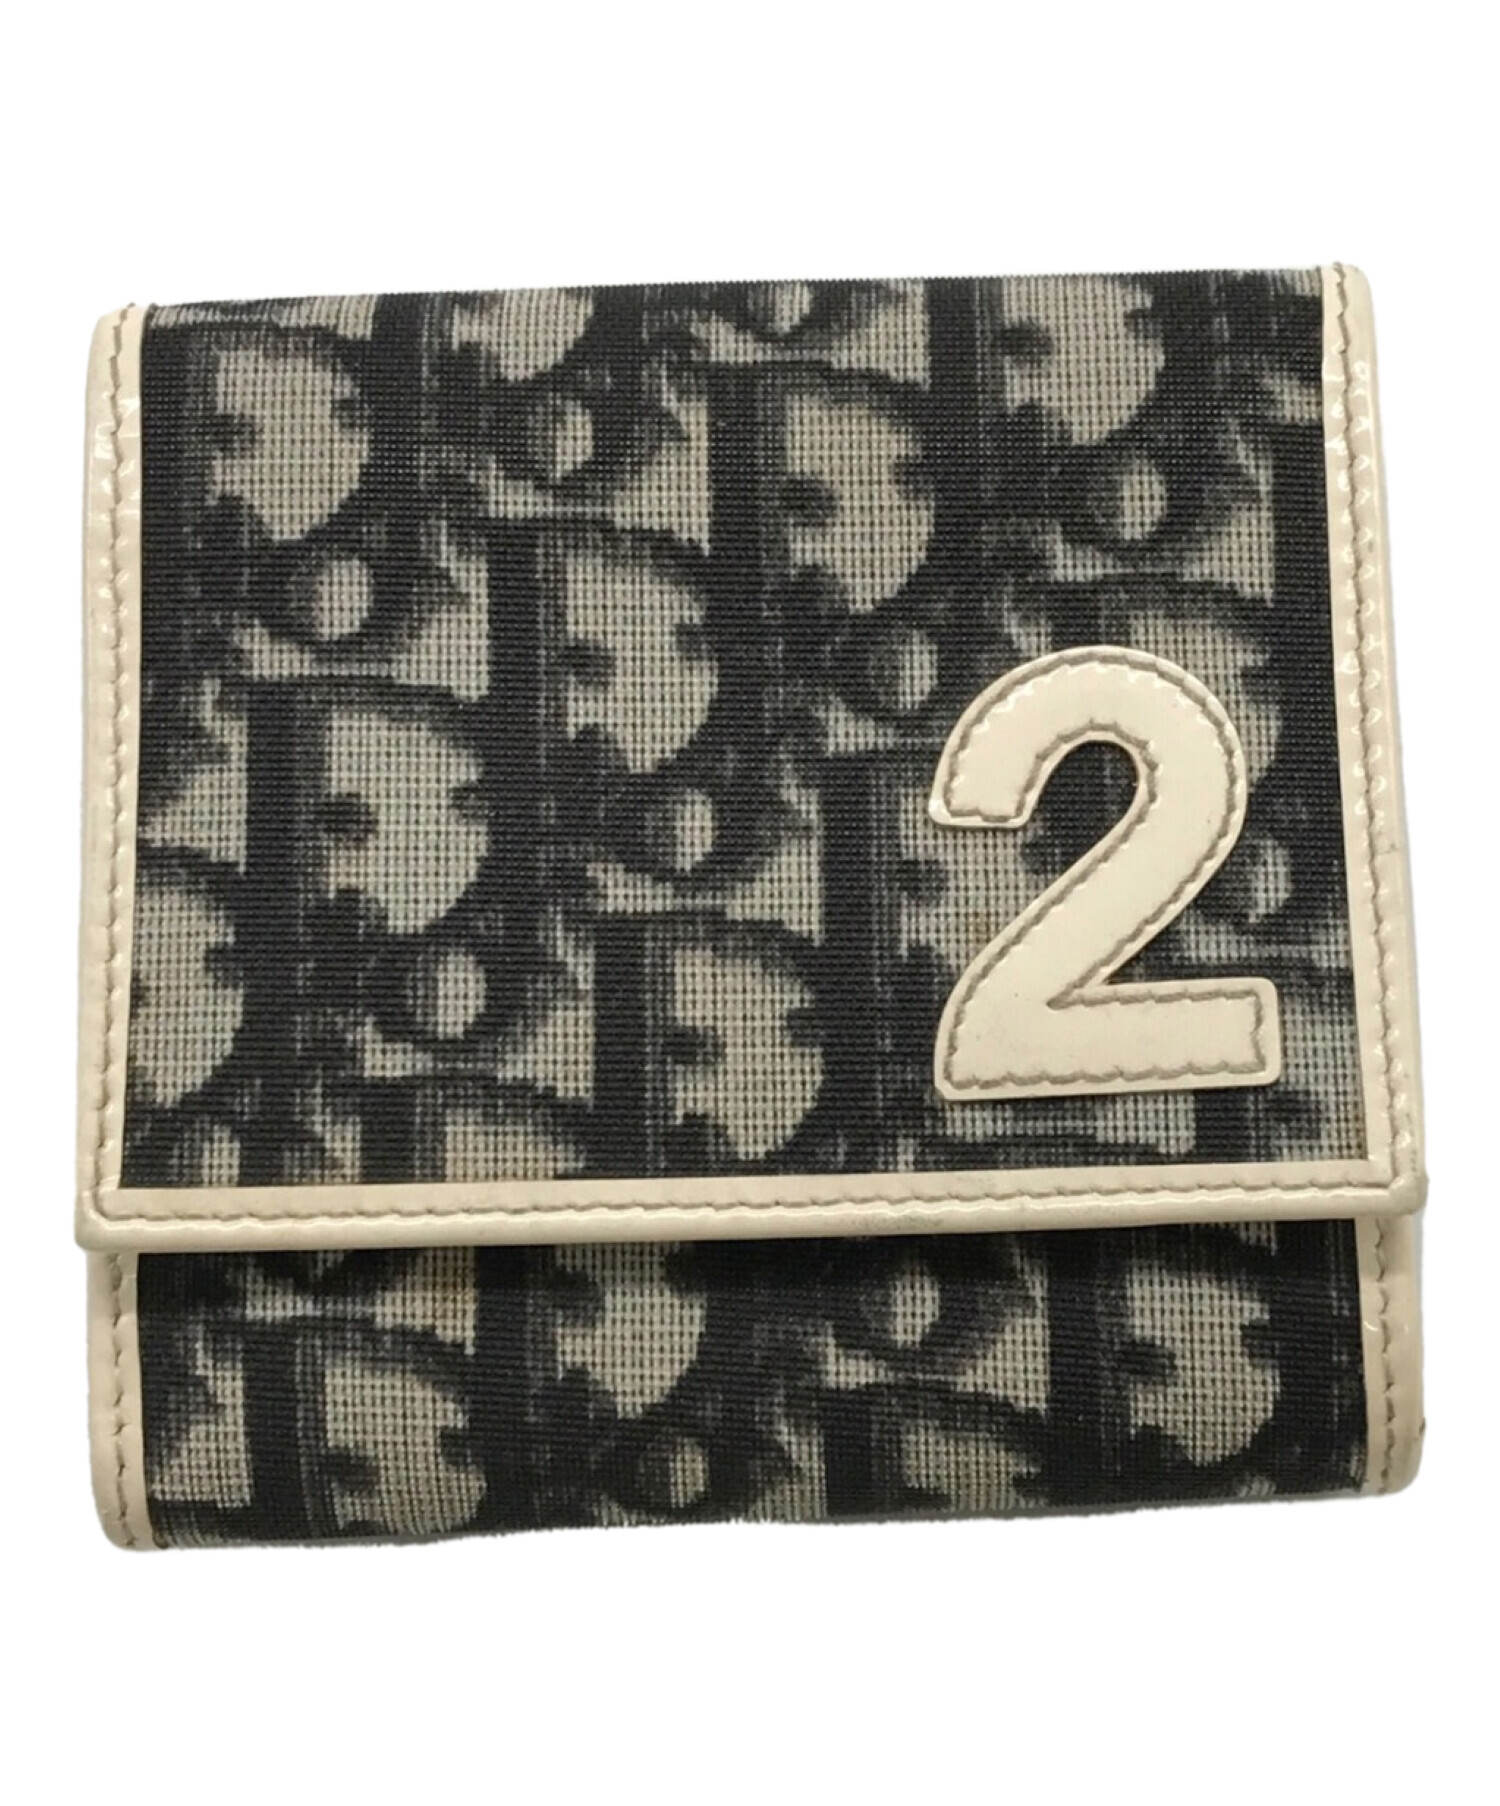 C.Dior   トロッター   三つ折レ財布